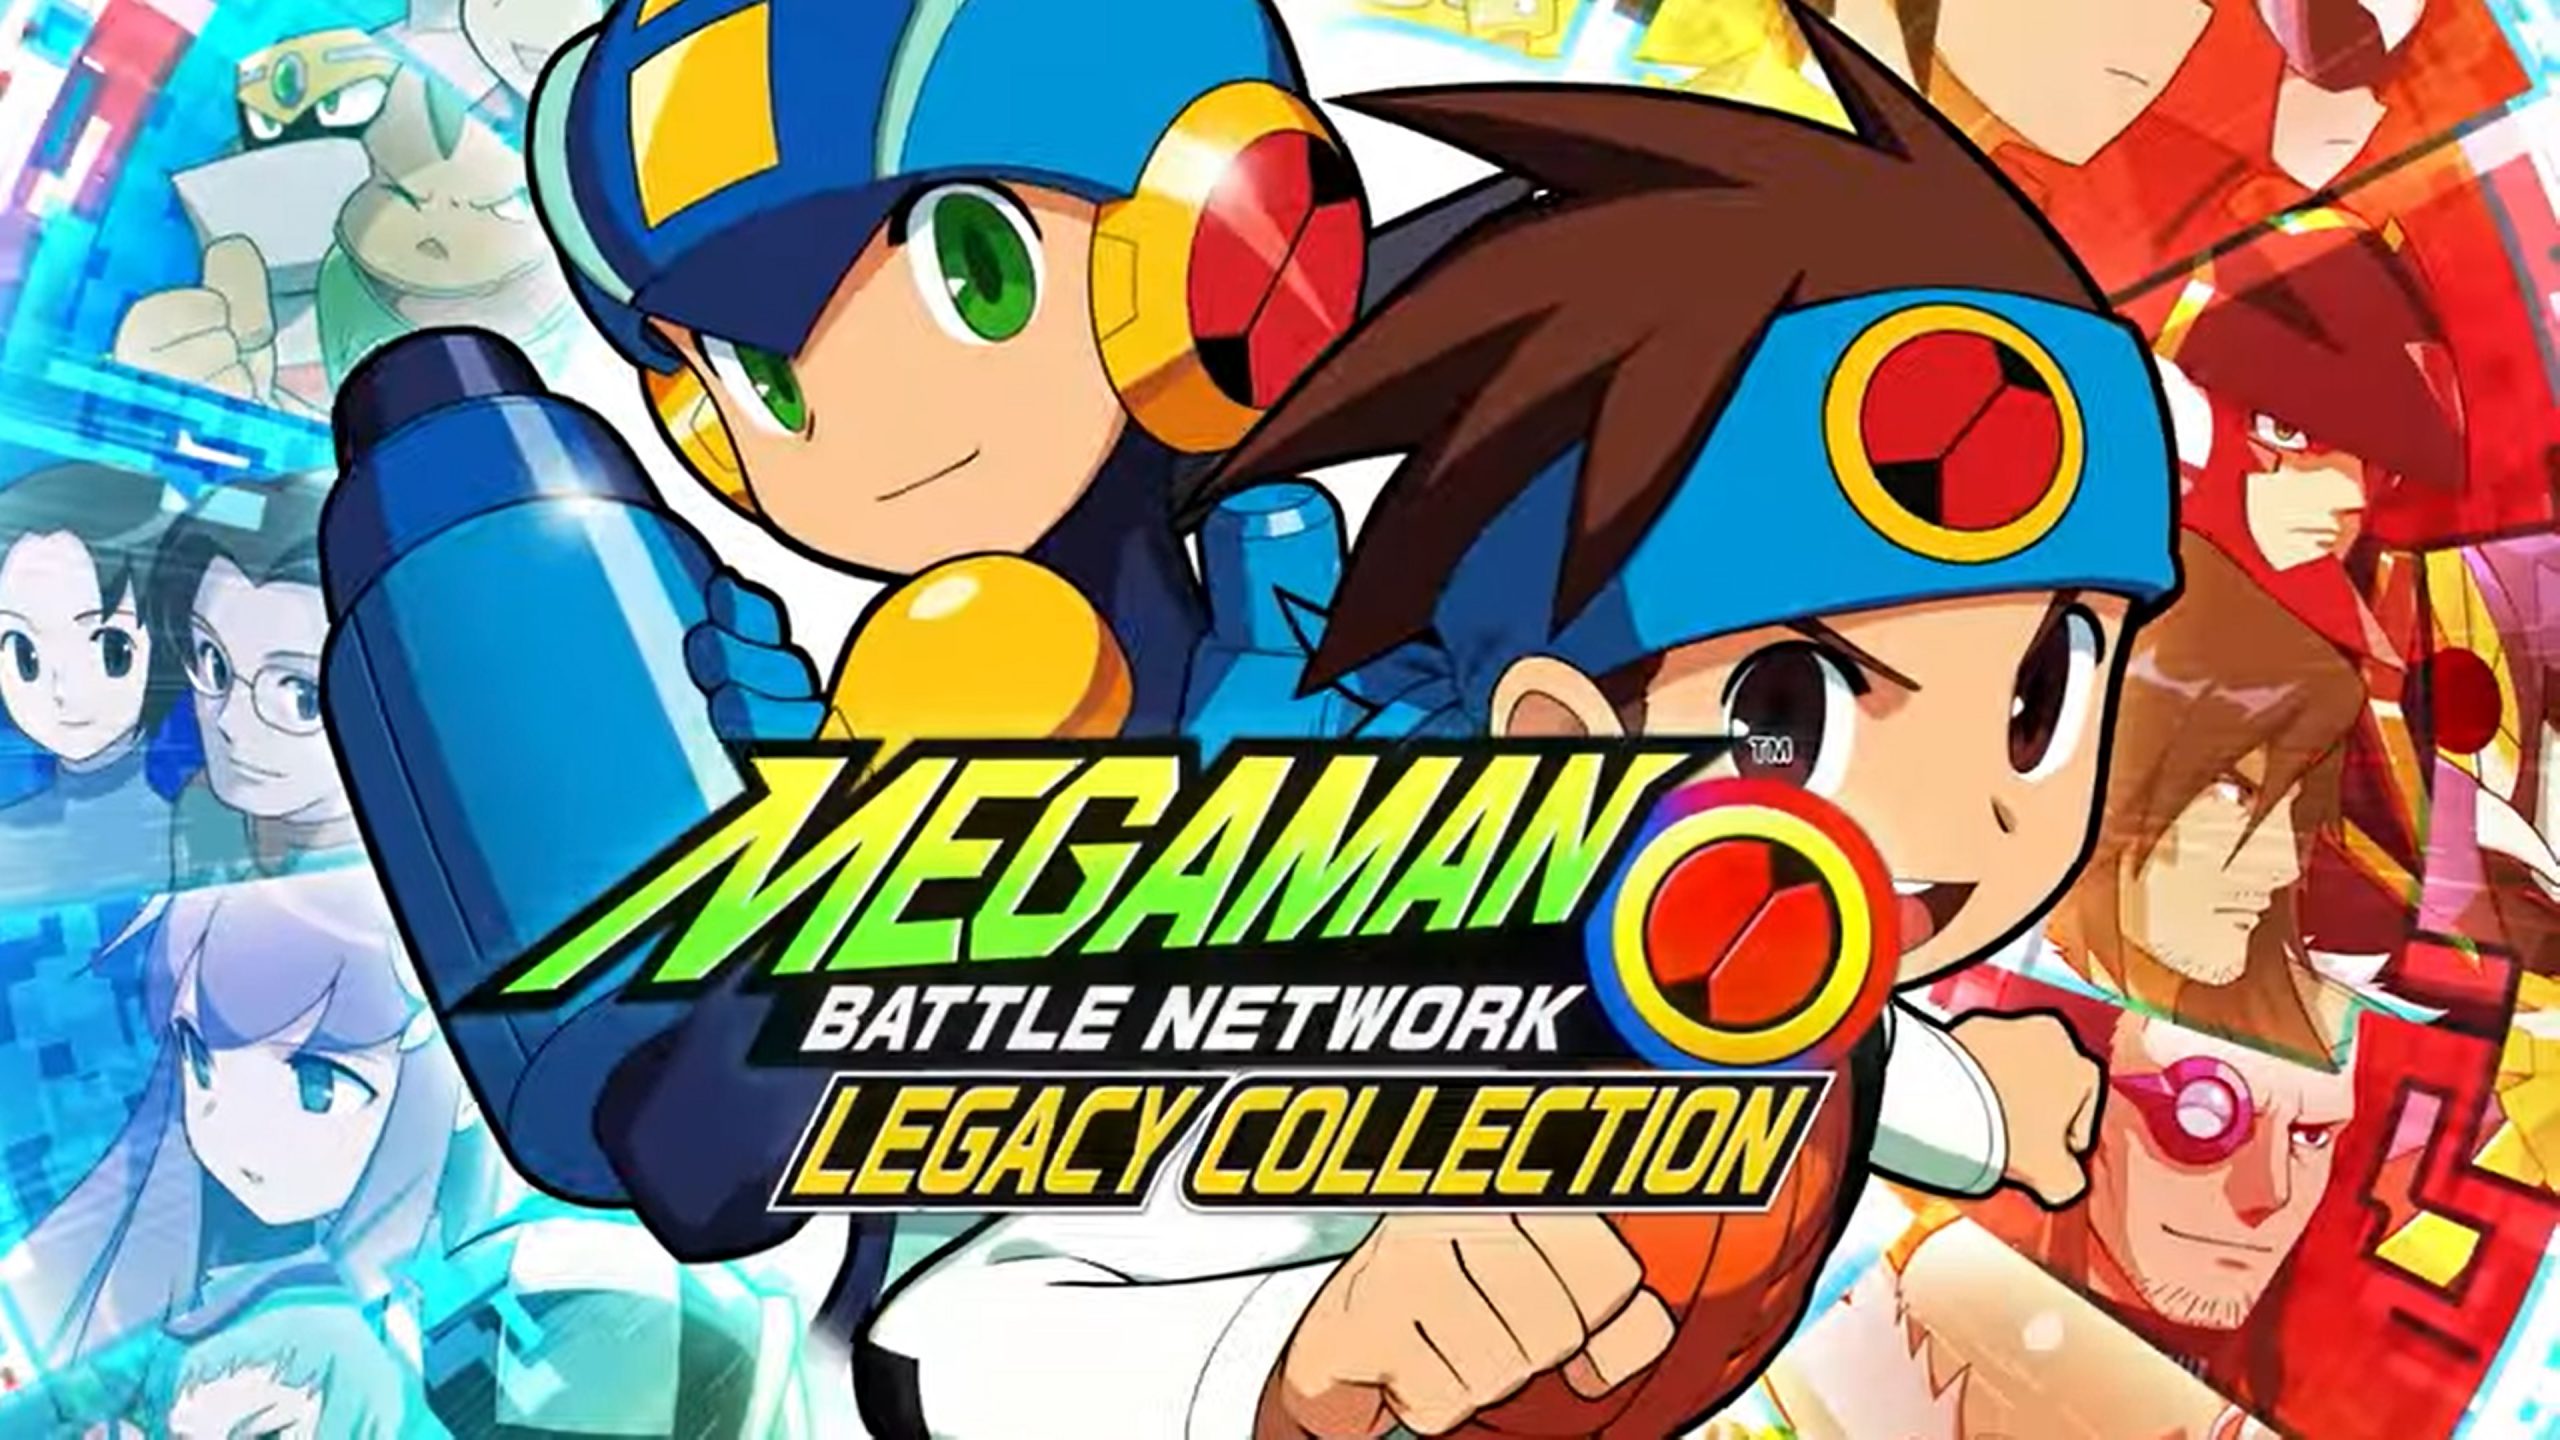 ¡Se anuncia la colección heredada de Mega Man Battle Network!